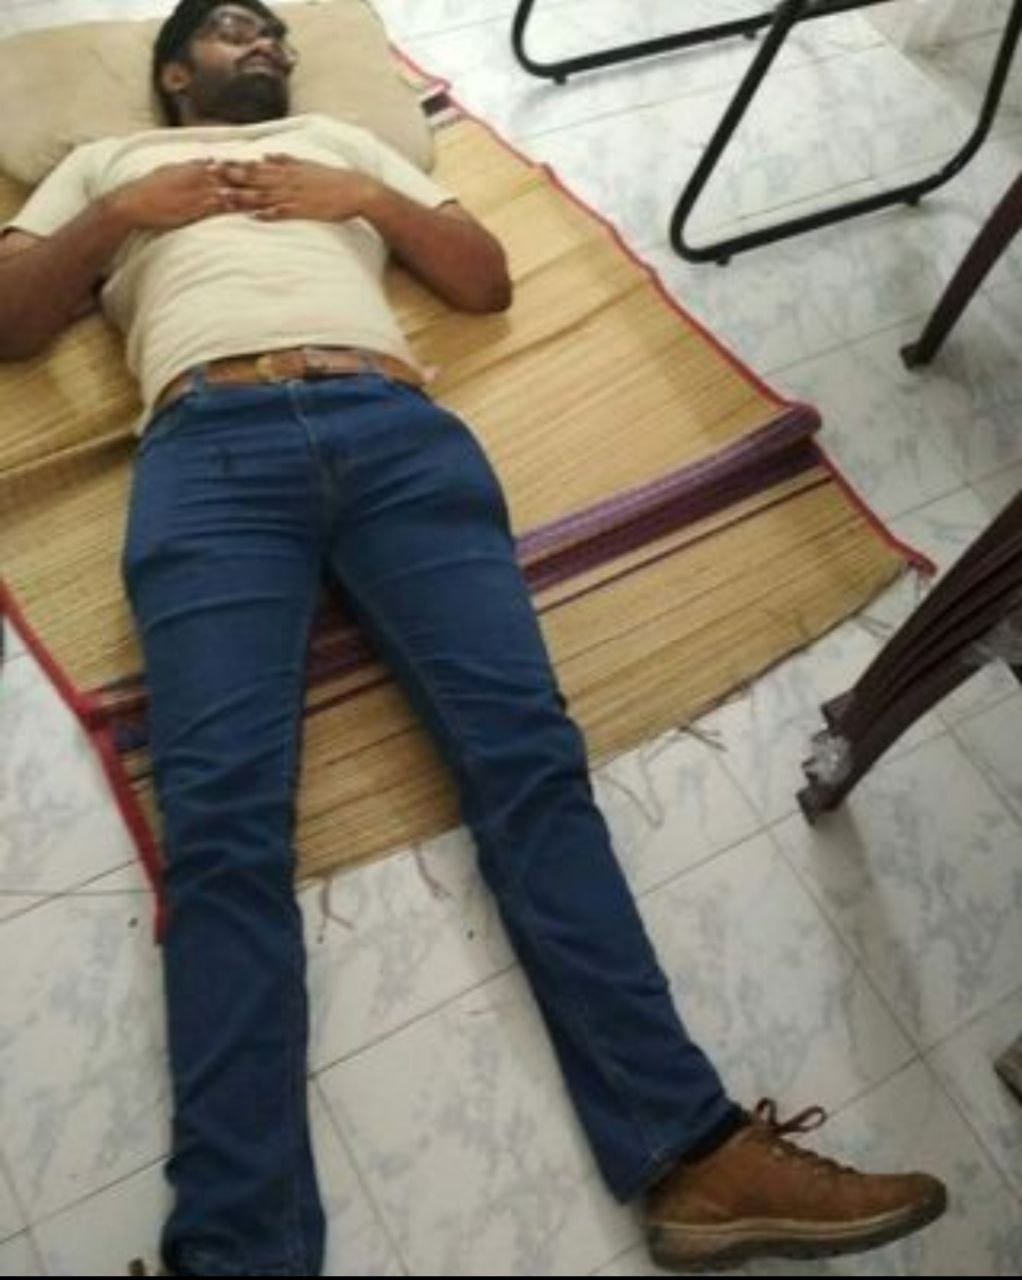 The Jason Samuel sleeping on a mat